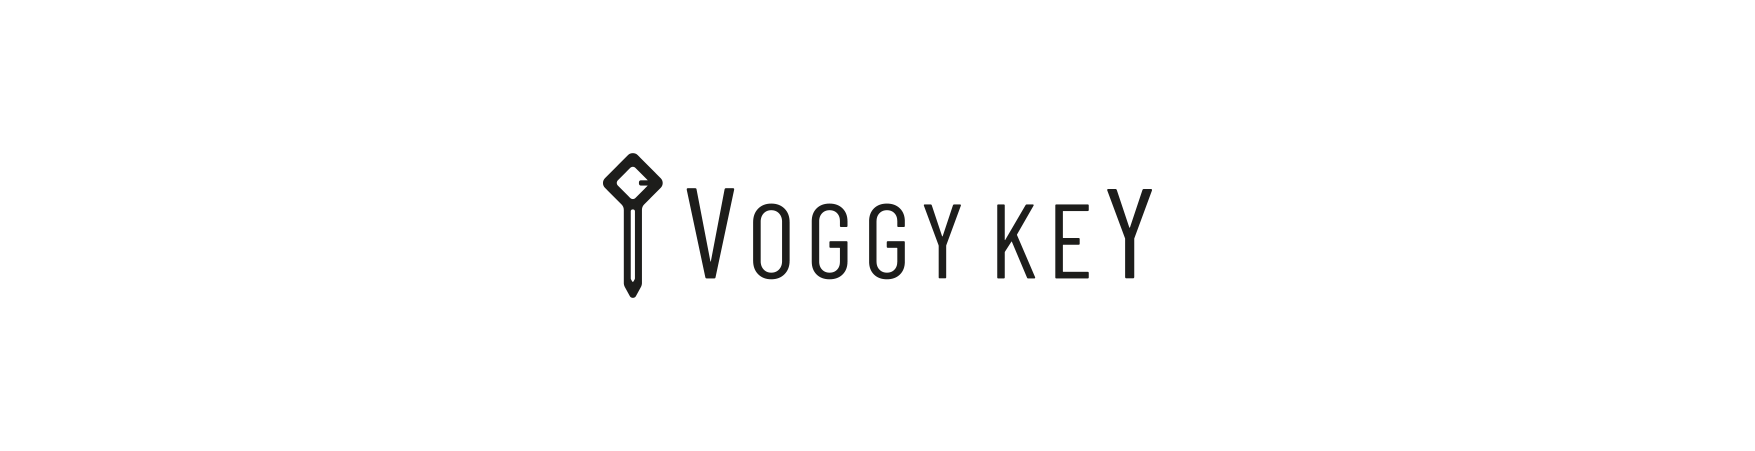 Voggy Key